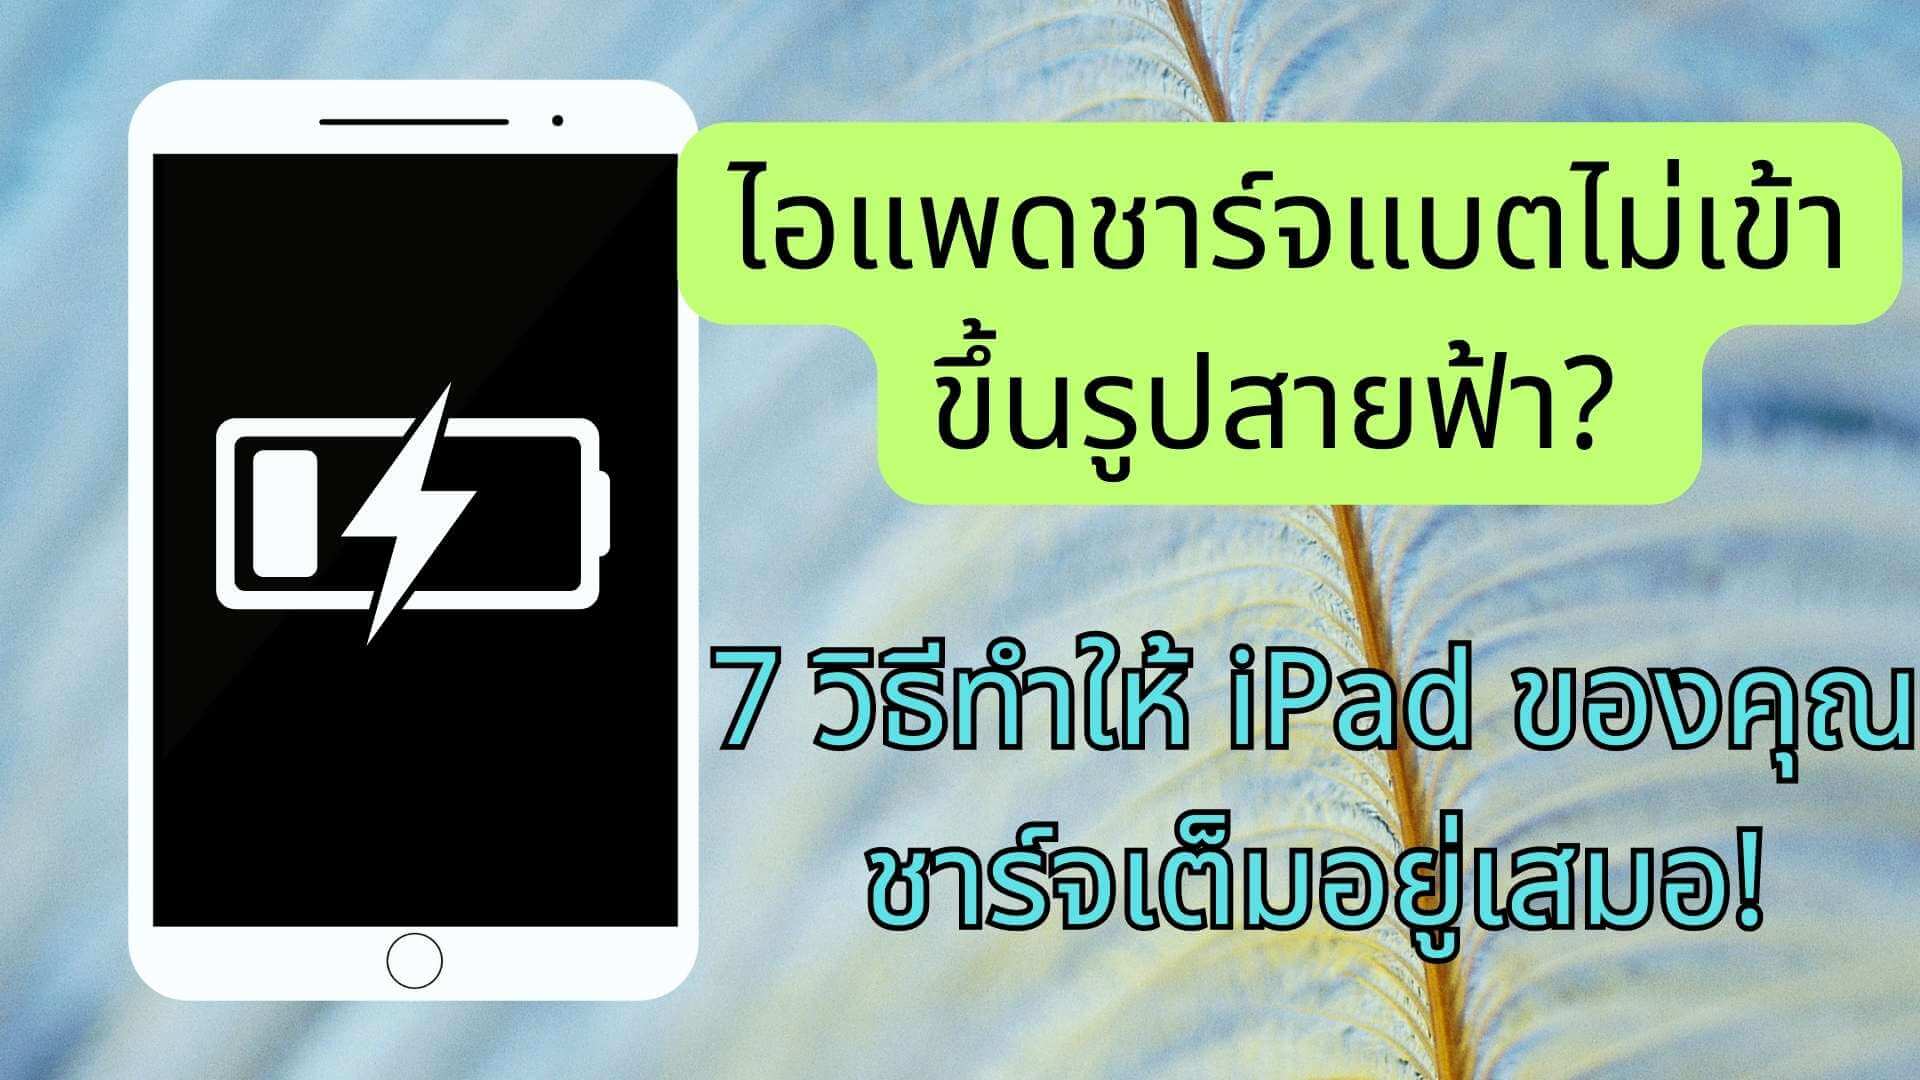 ไอแพดชาร์จแบตไม่เข้าขึ้นรูปสายฟ้า?  7 วิธีทำให้ iPad ของคุณชาร์จเต็มอยู่เสมอ!